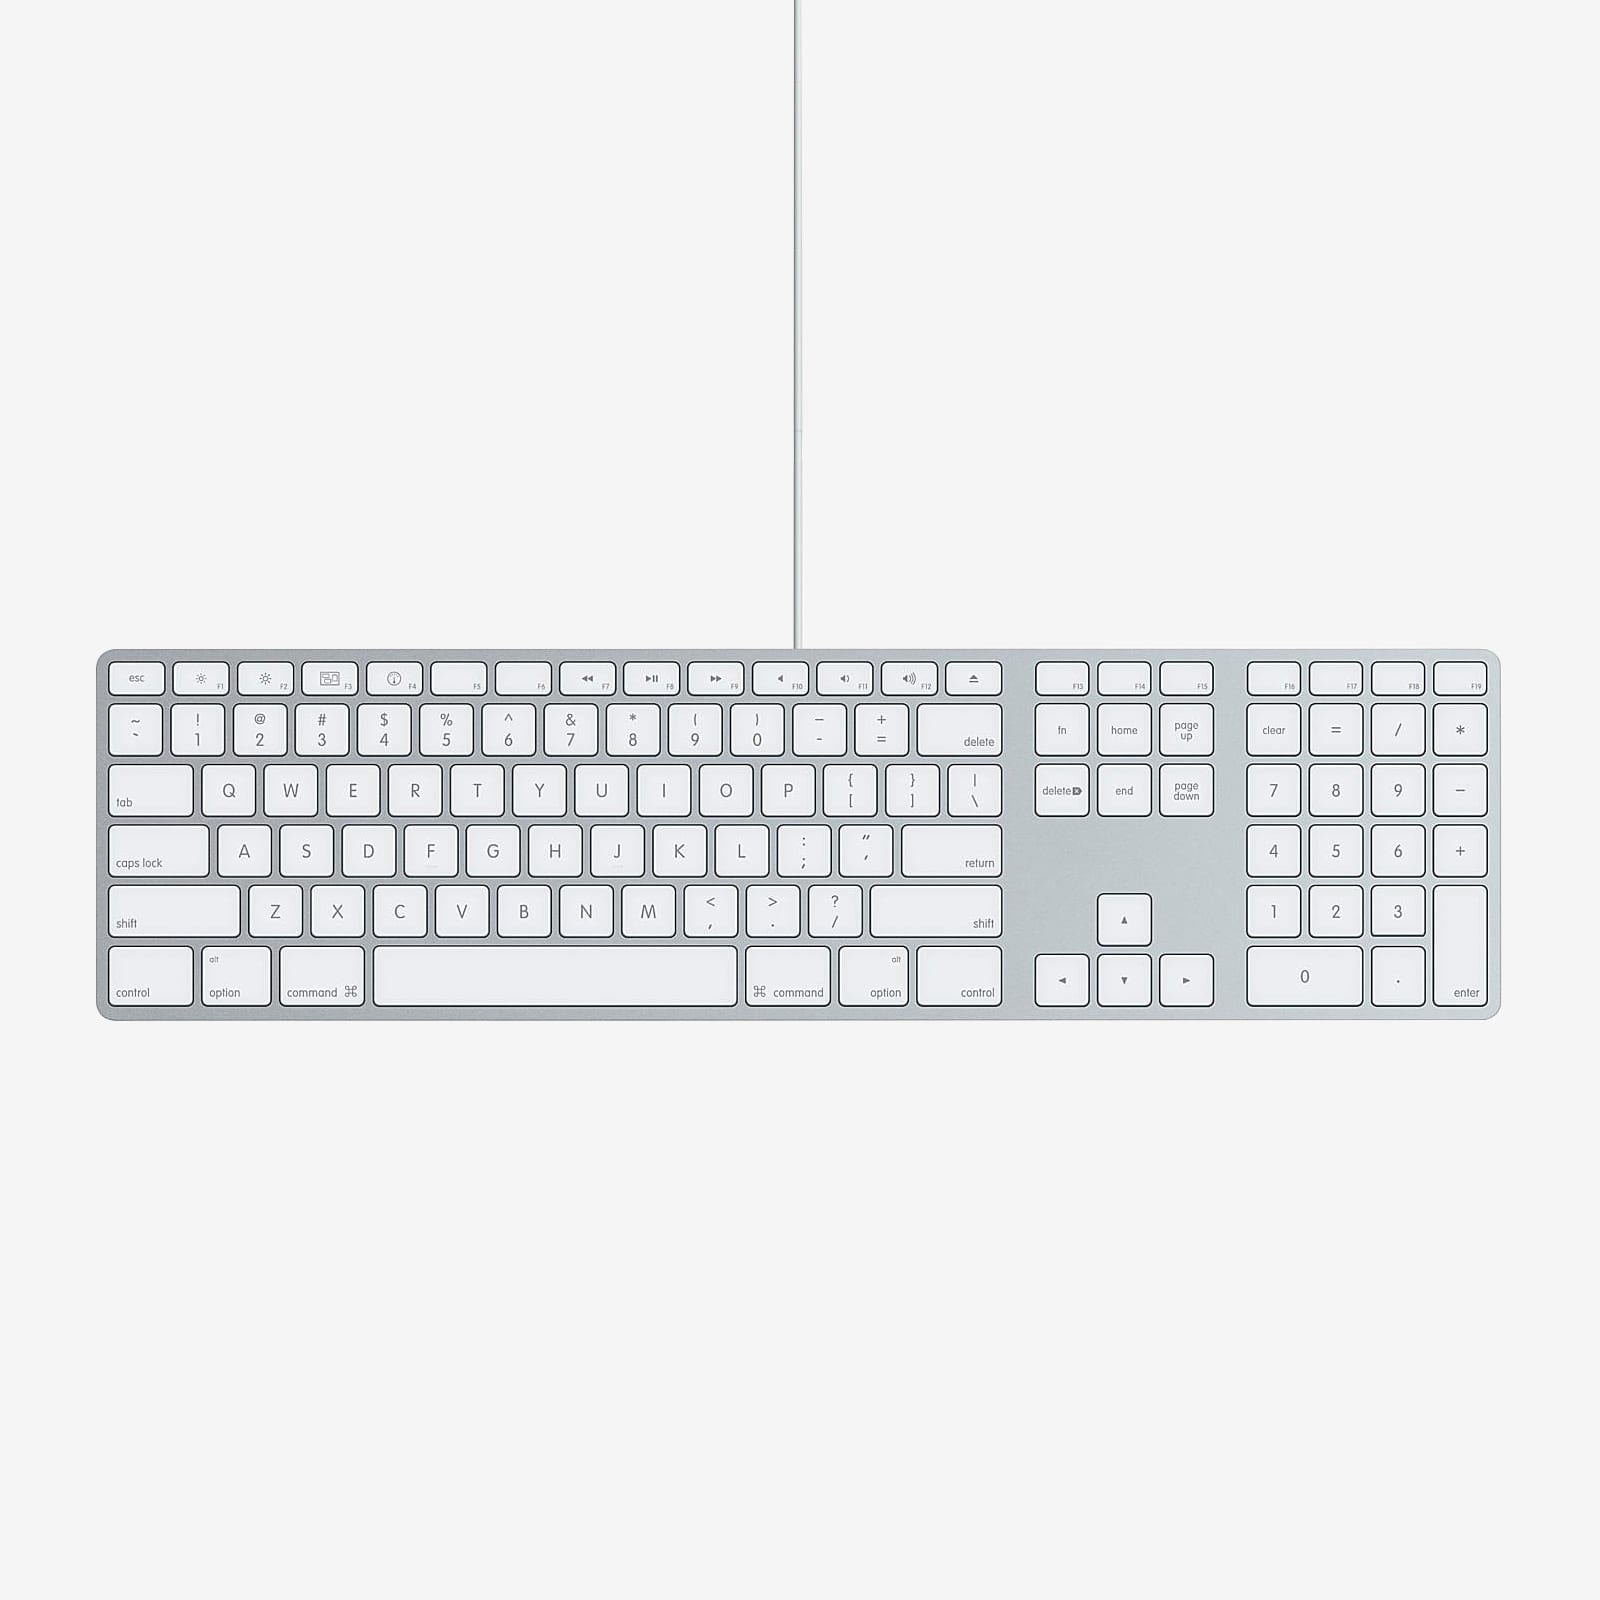 1 x Apple Aluminium Keyboard Numeric Pad Used